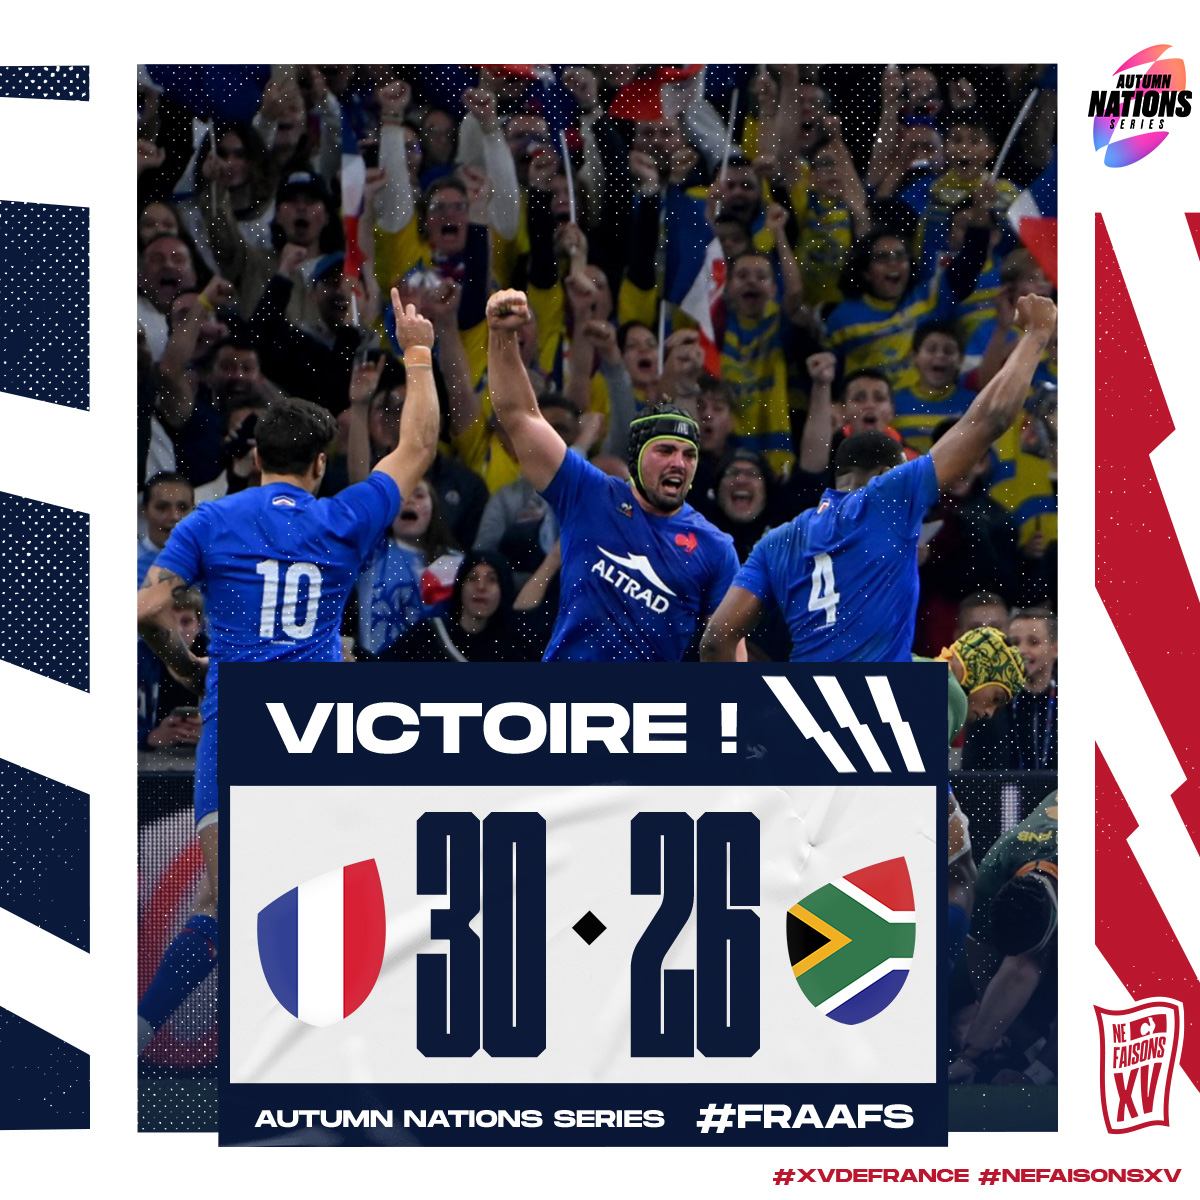 𝐕 𝐈 𝐂 𝐓 𝐎 𝐈 𝐑 𝐄 🇫🇷🤩 Les Bleus s'imposent pour la 12ème fois consécutive et font tomber les Champions du Monde ce soir à Marseille ! 😍 #FRAAFS #XVdeFrance #NeFaisonsXV